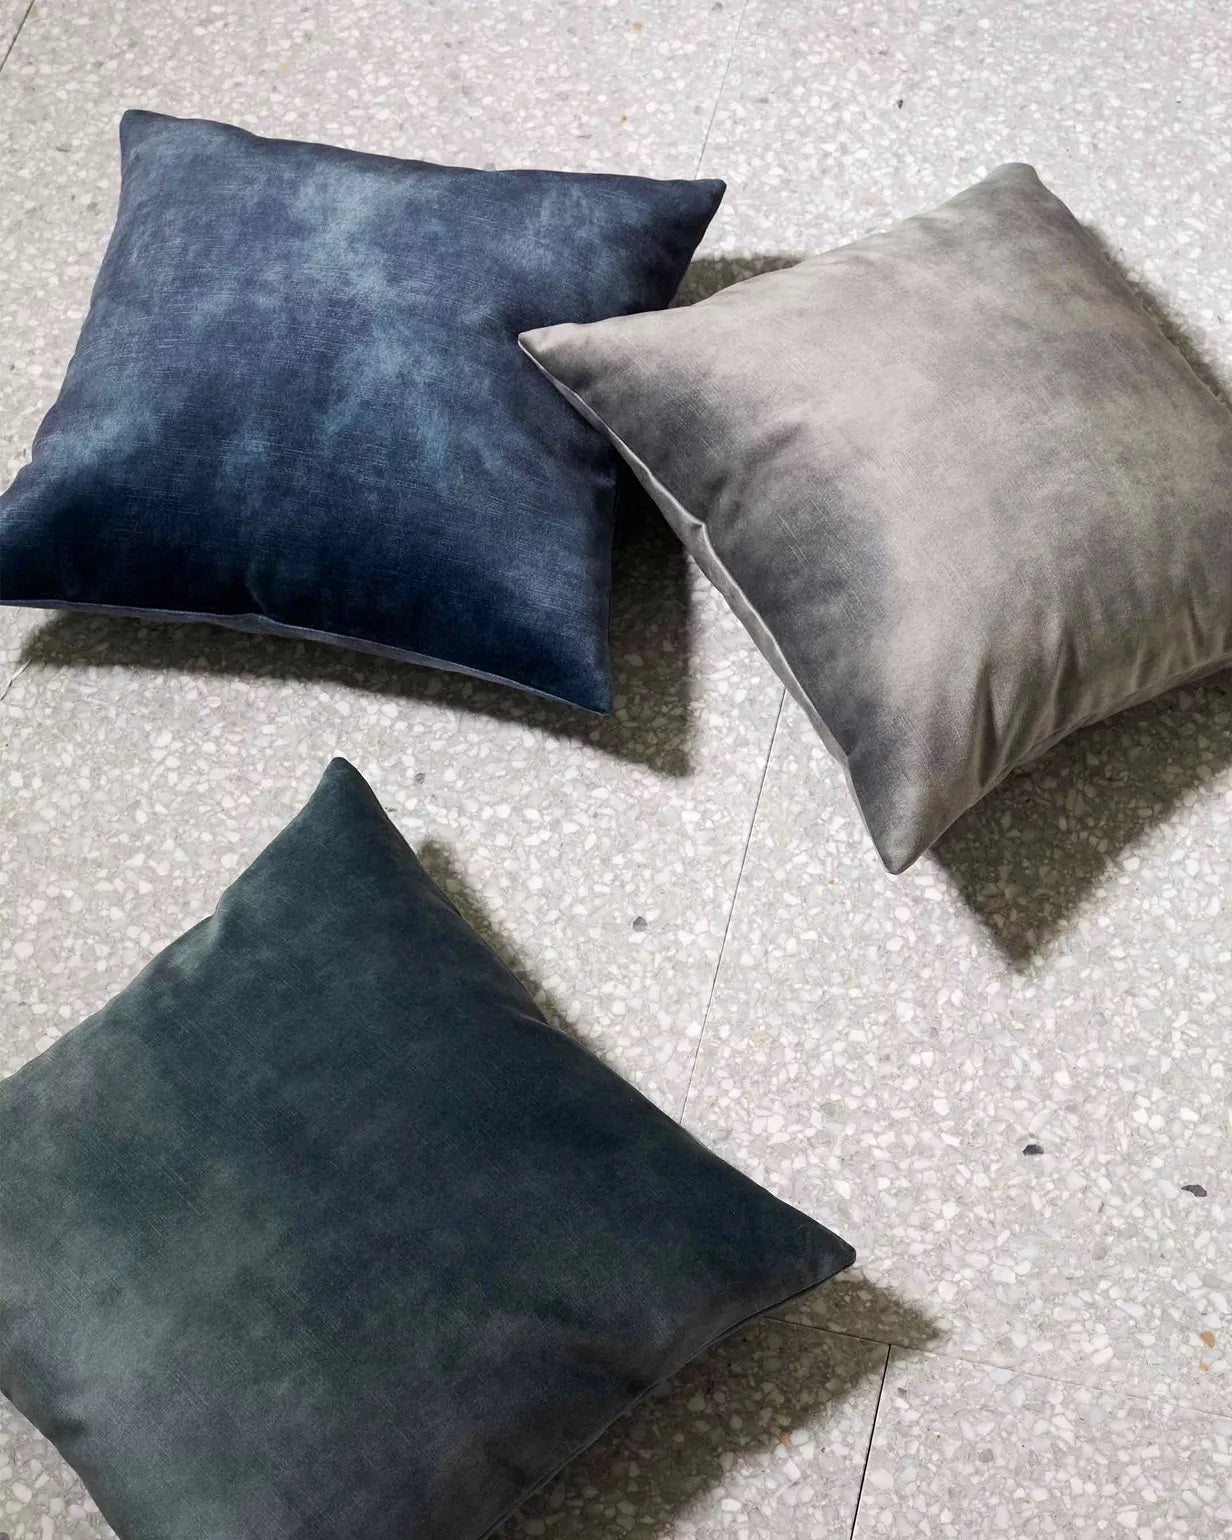 Velvet Cushion |  Powder